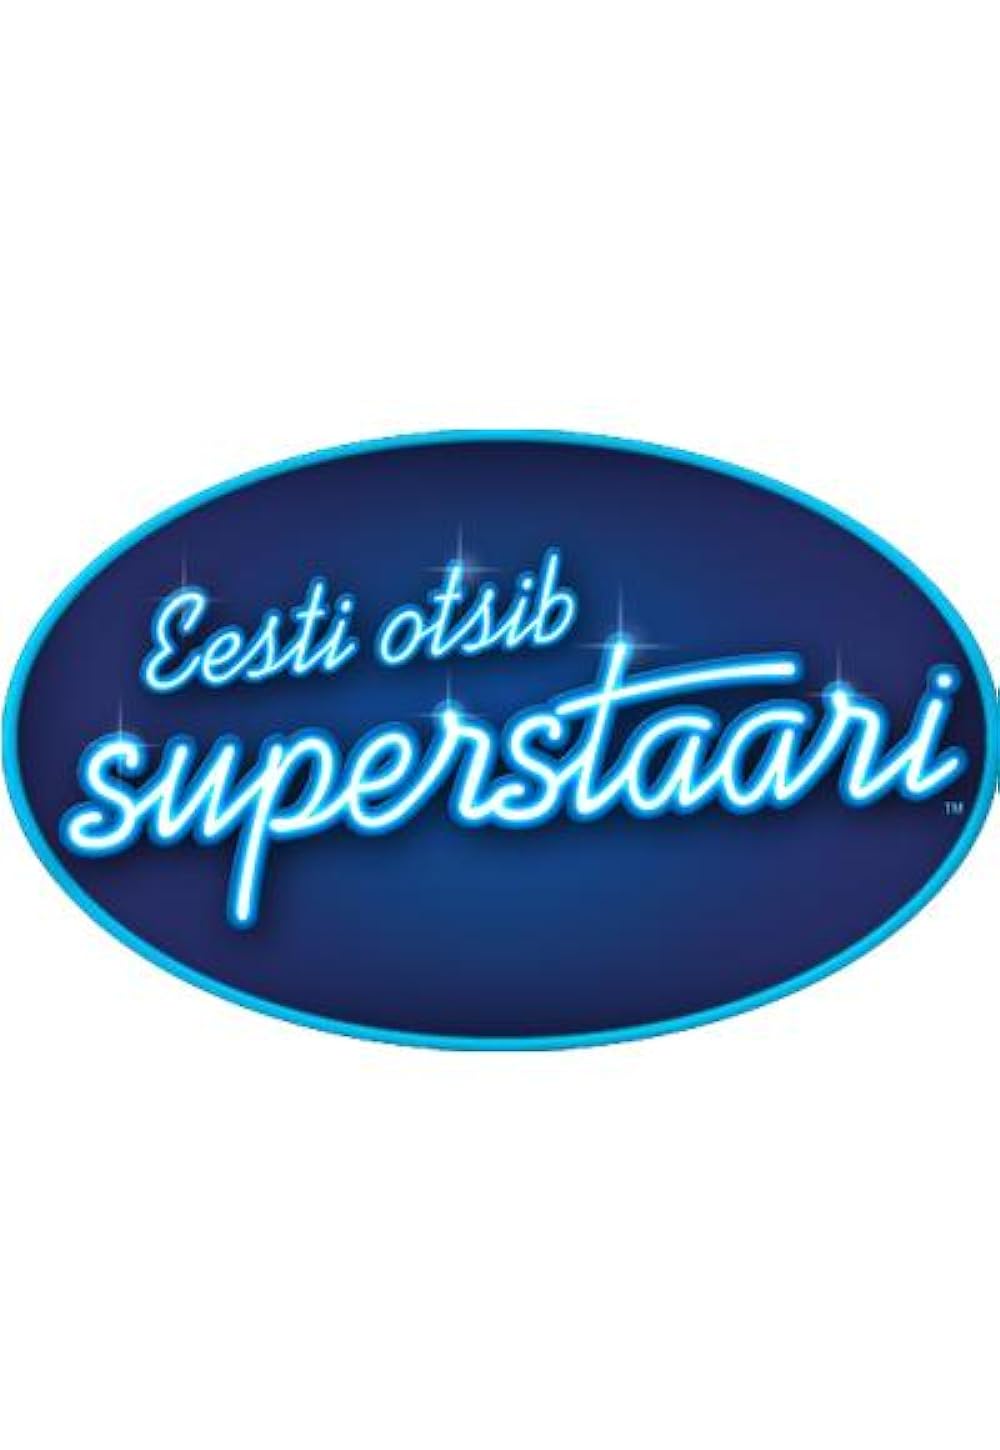 Eesti otsib superstaari